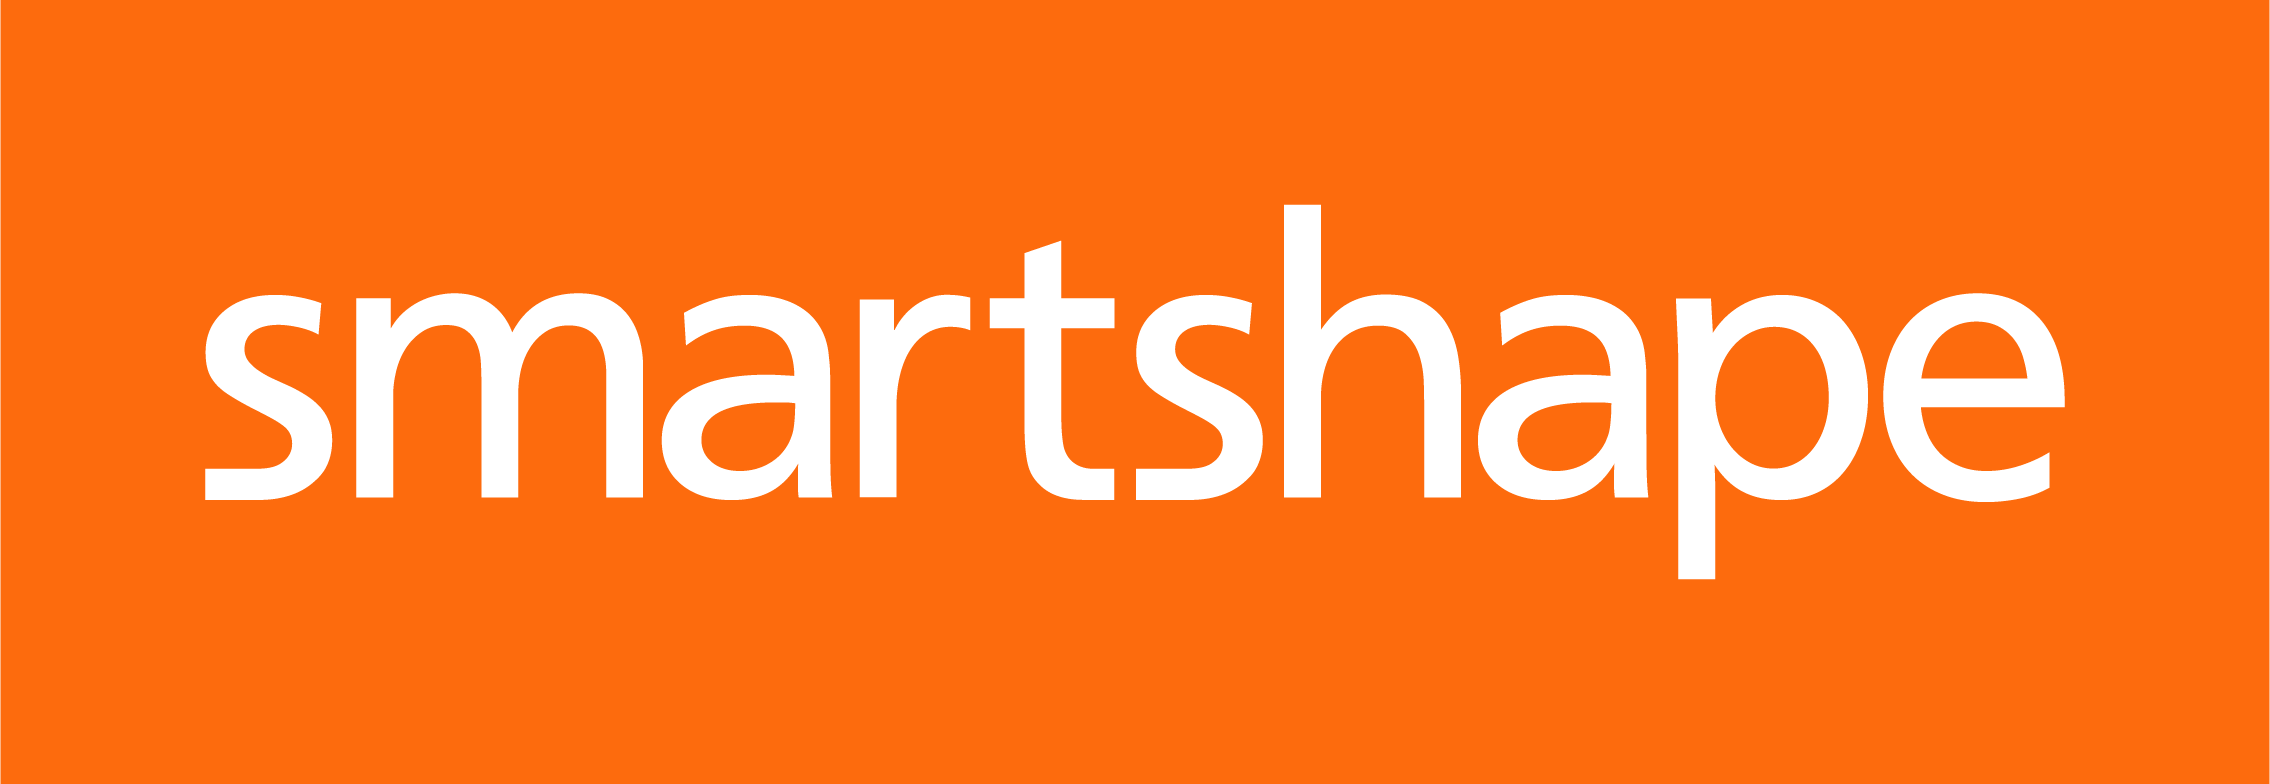 smartshape logo